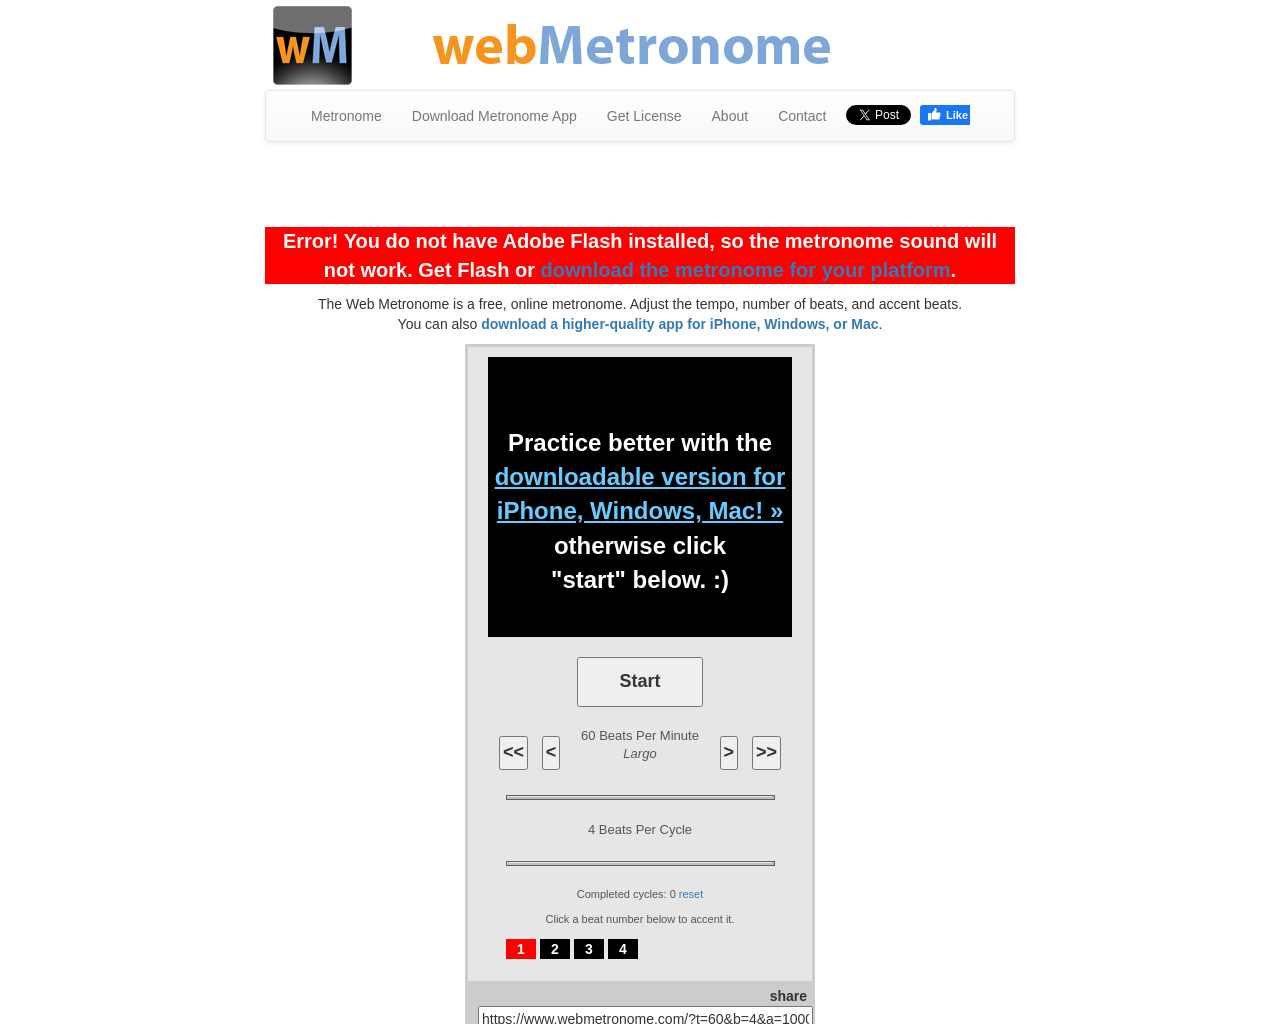 webmetronome.com